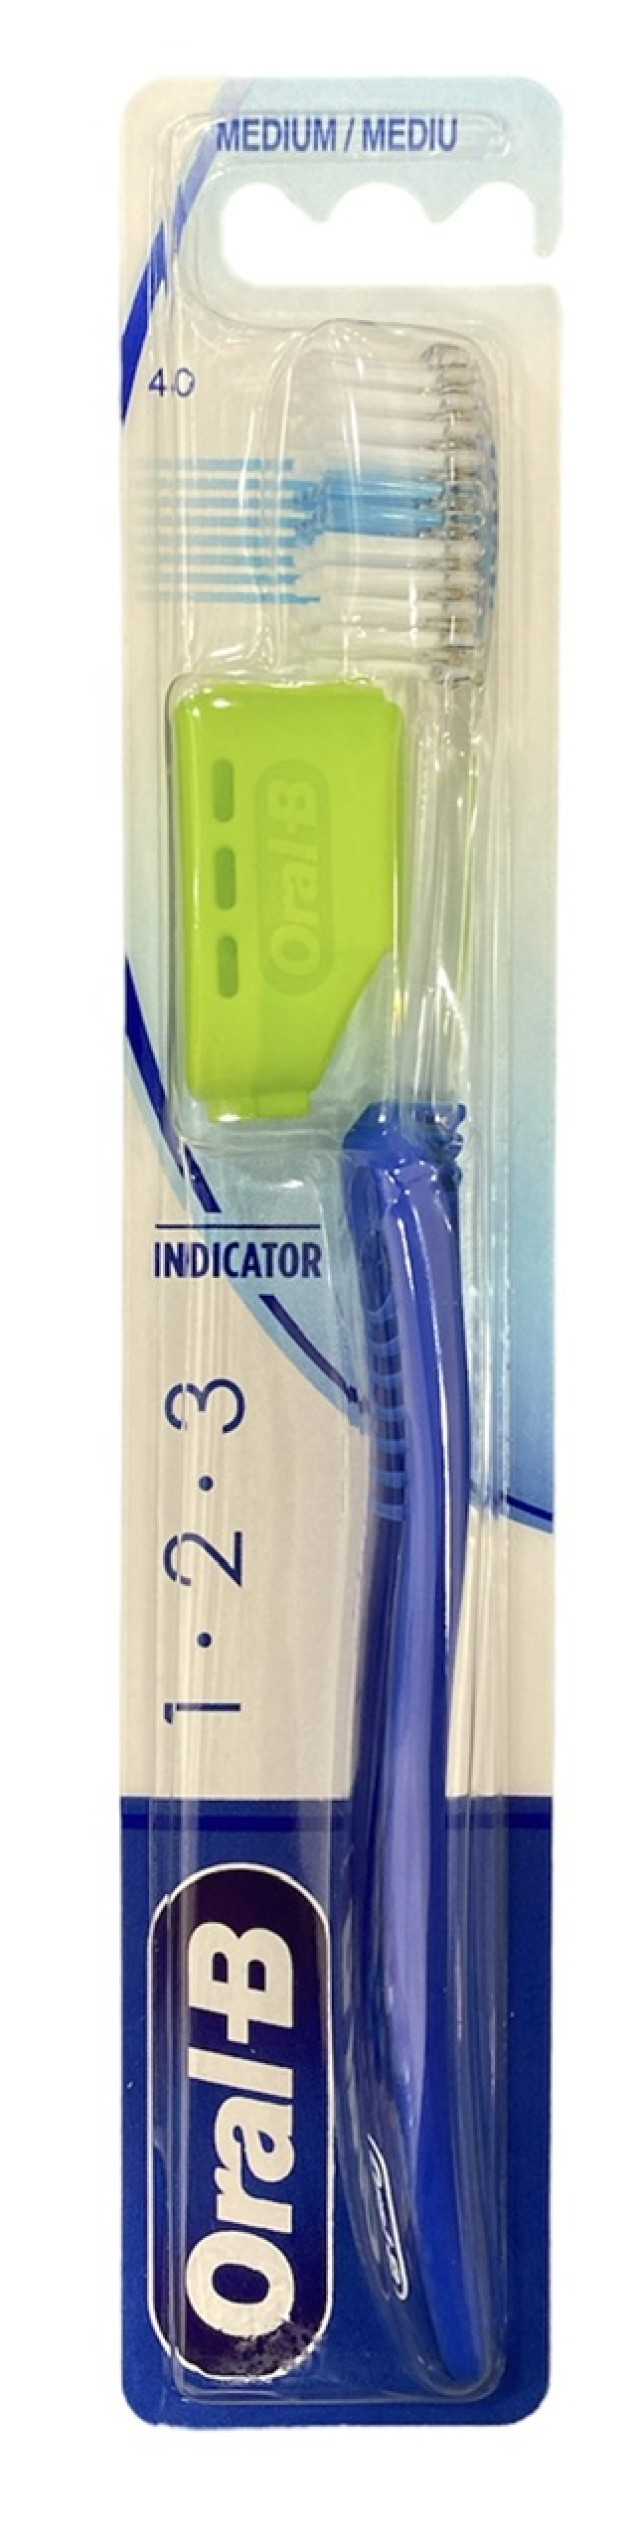 Oral-B Οδοντόβουρτσα Μέτρια Indicator 1-2-3 40mm Χρώμα Μπλε, 1τμχ